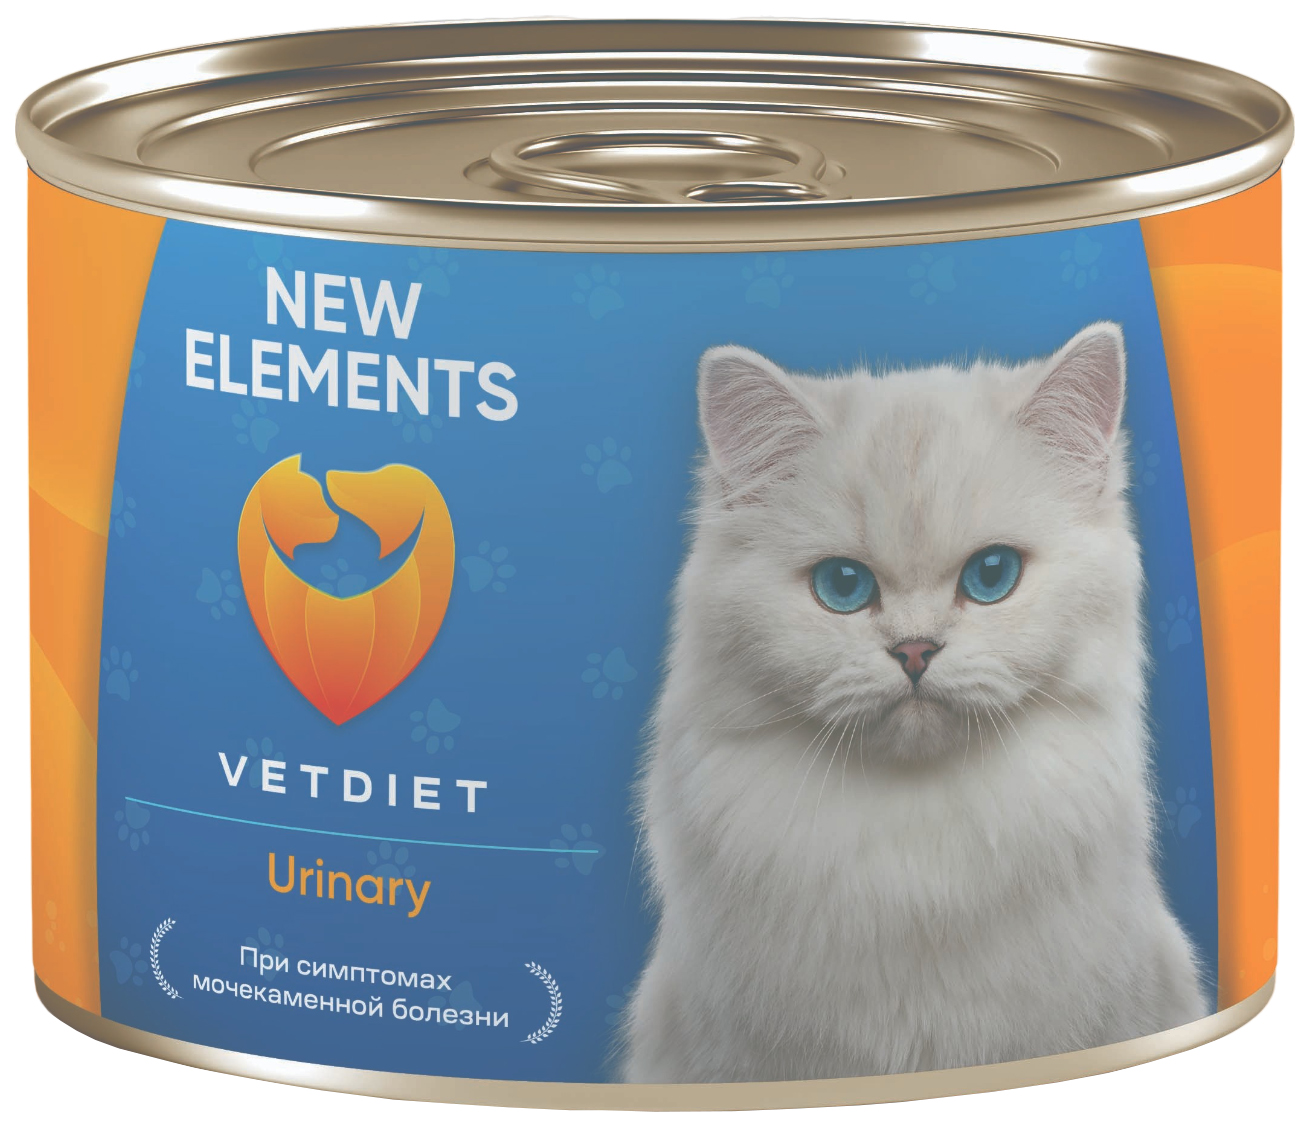 Влажный корм для кошек New Elements VETDIET Weilght, с морской рыбой и мясом, 240 г